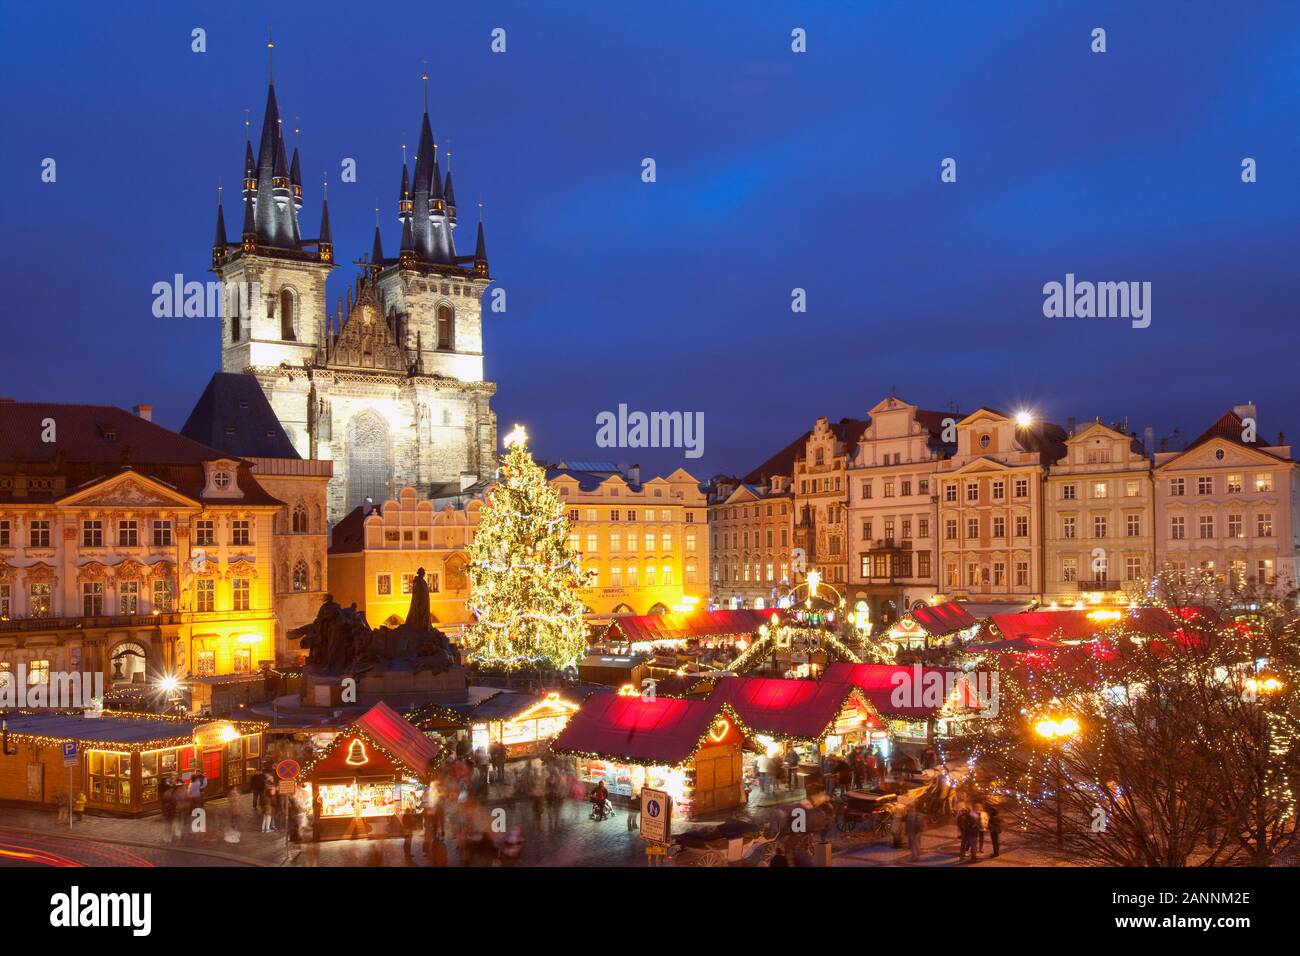 République tchèque, Prague - Marché de Noël sur la place de la Vieille Ville Banque D'Images